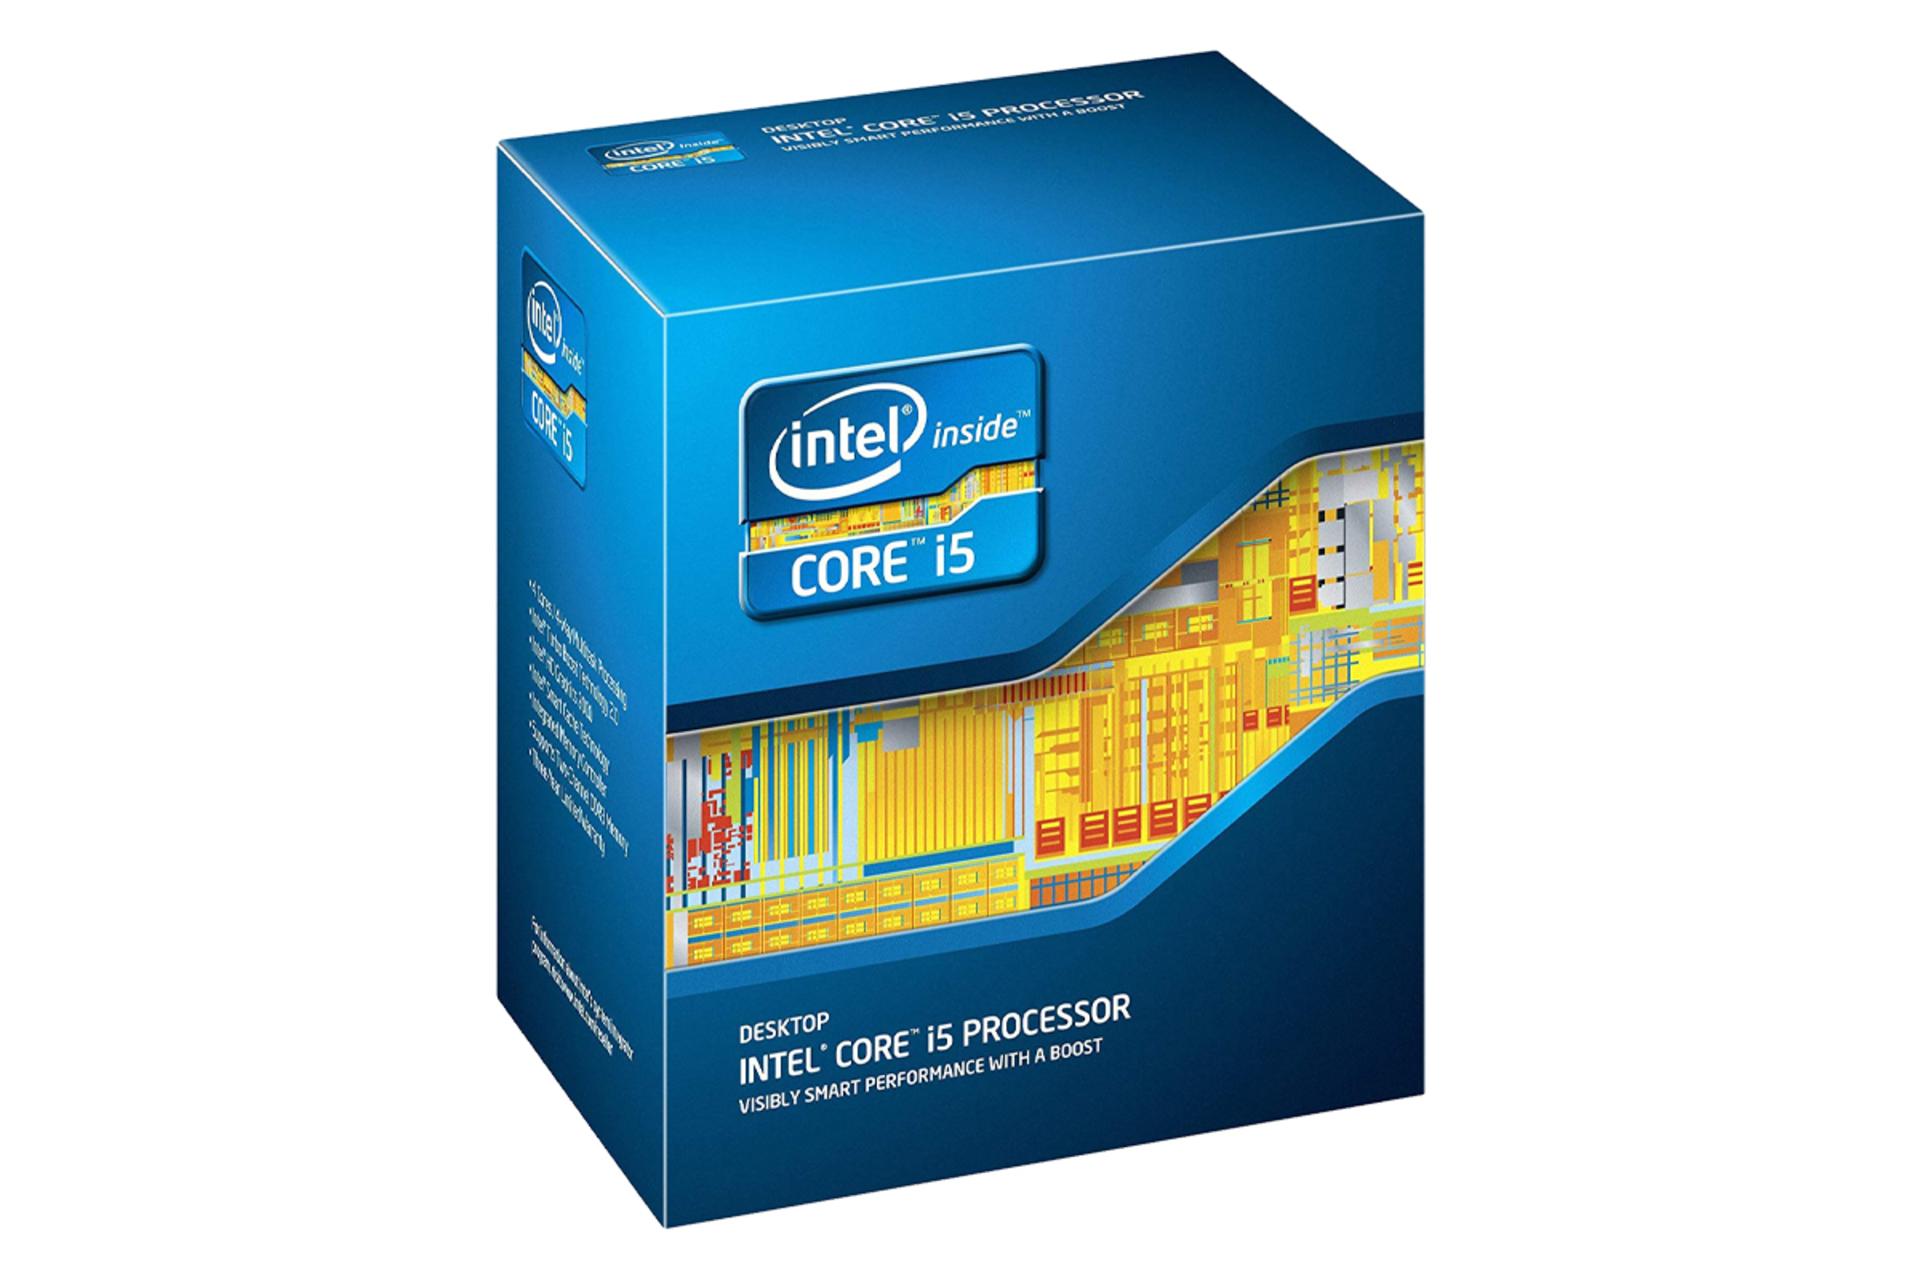 مرجع متخصصين ايران اينتل Core i5-2400 / Intel Core i5-2400